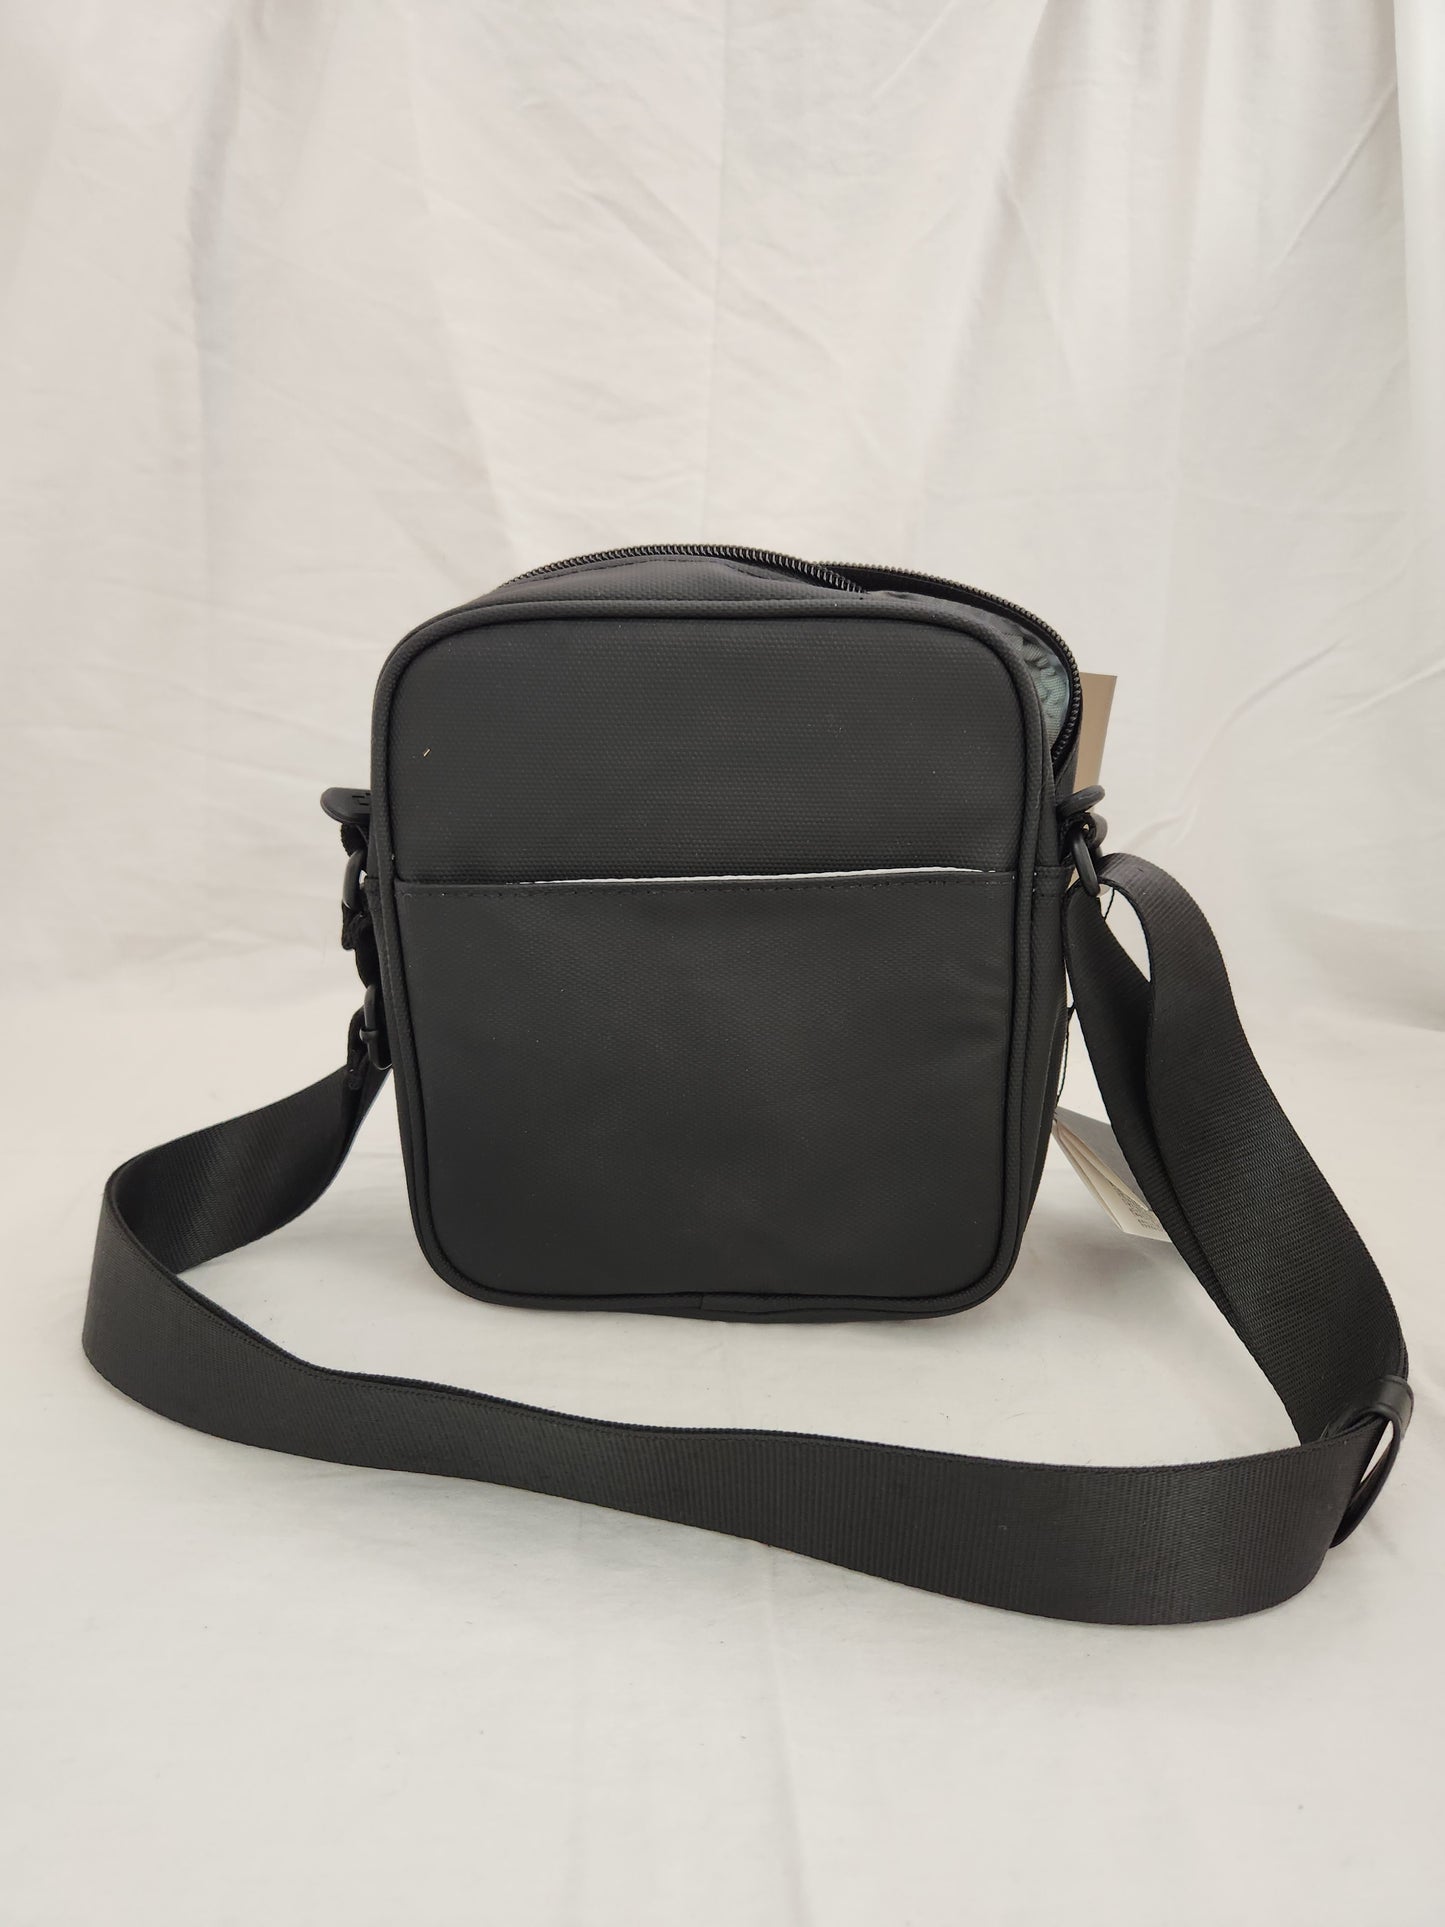 DJI Black Mini Bag